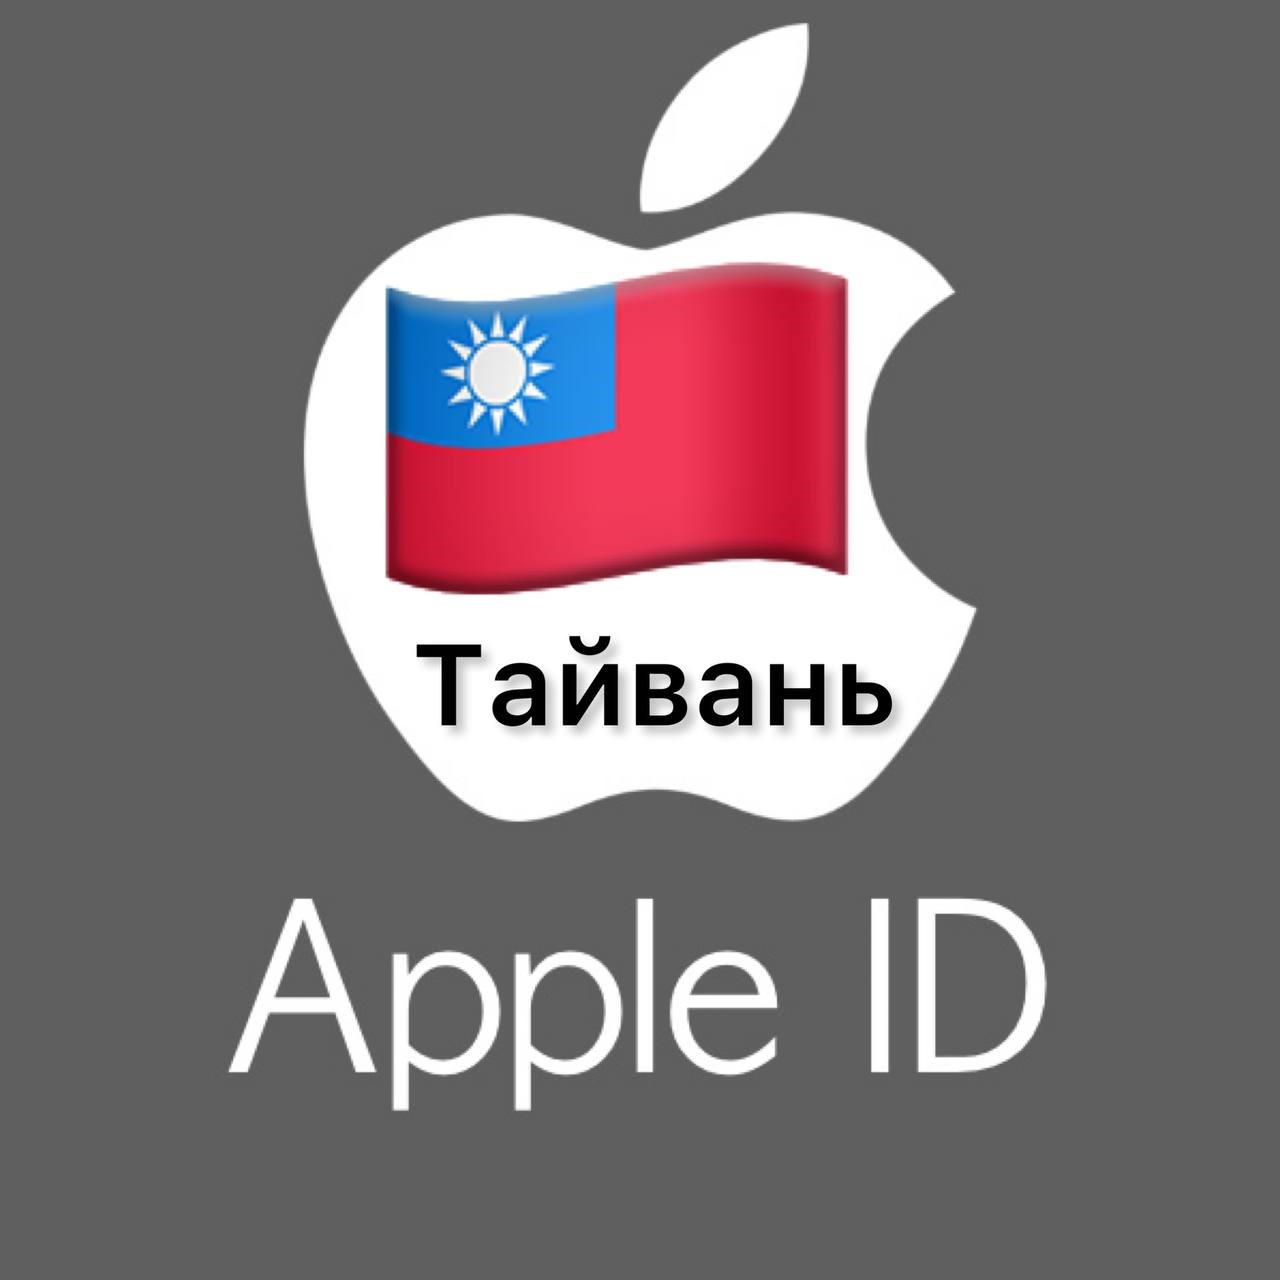 🍎 Apple ID аккаунт ТАЙВАНЬ iPhone ios iPad Appstore 🎁